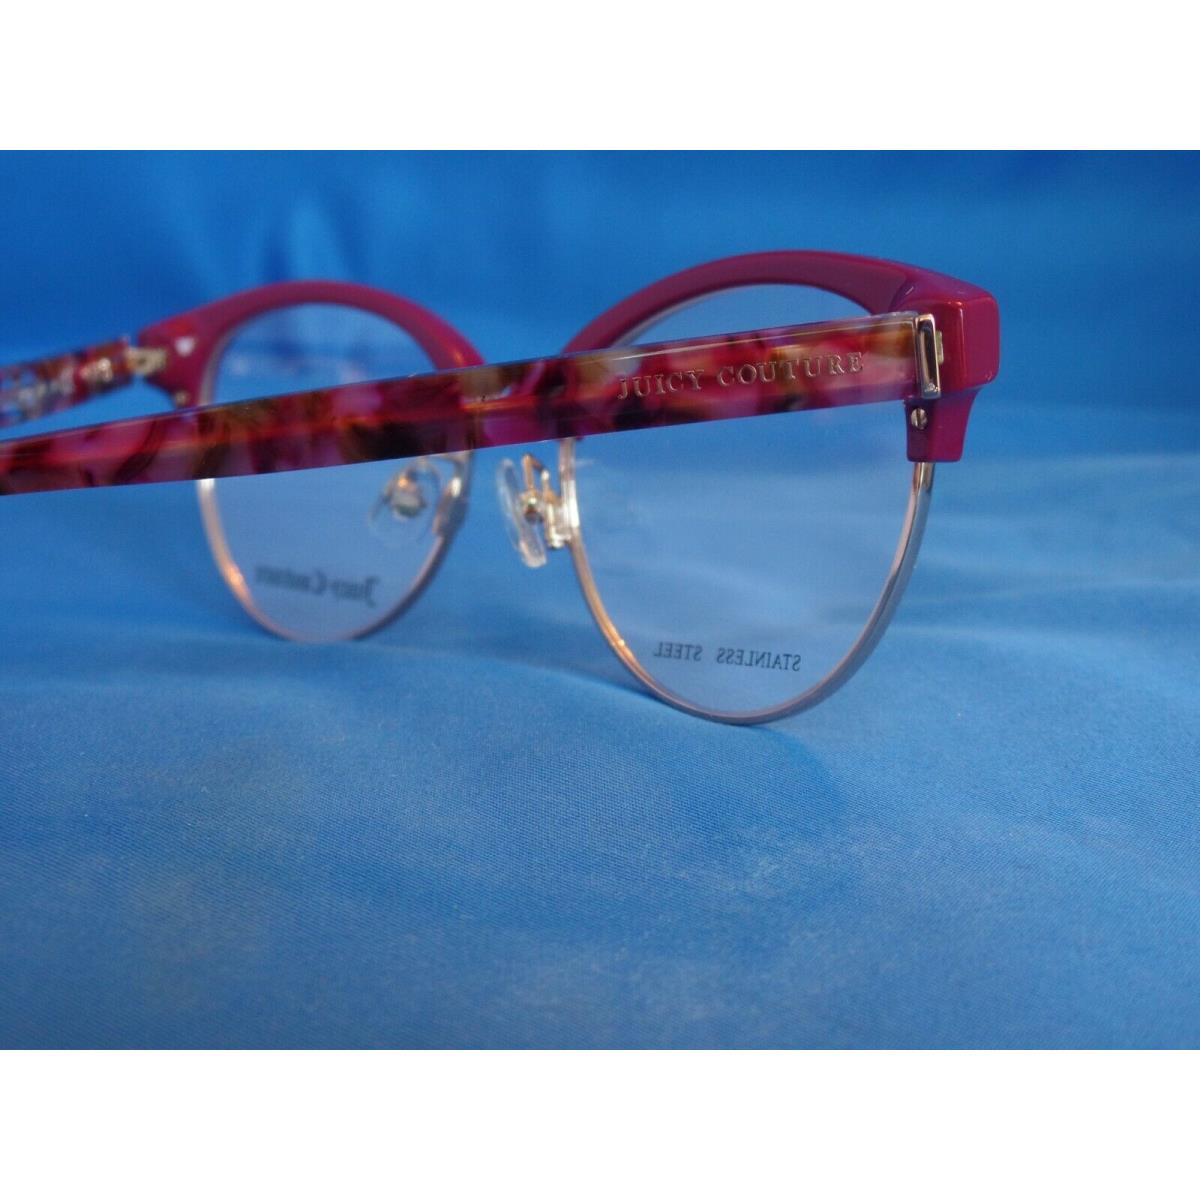 Juicy Couture eyeglasses  - Burgundy Opal , Burgundy Opal Frame 7